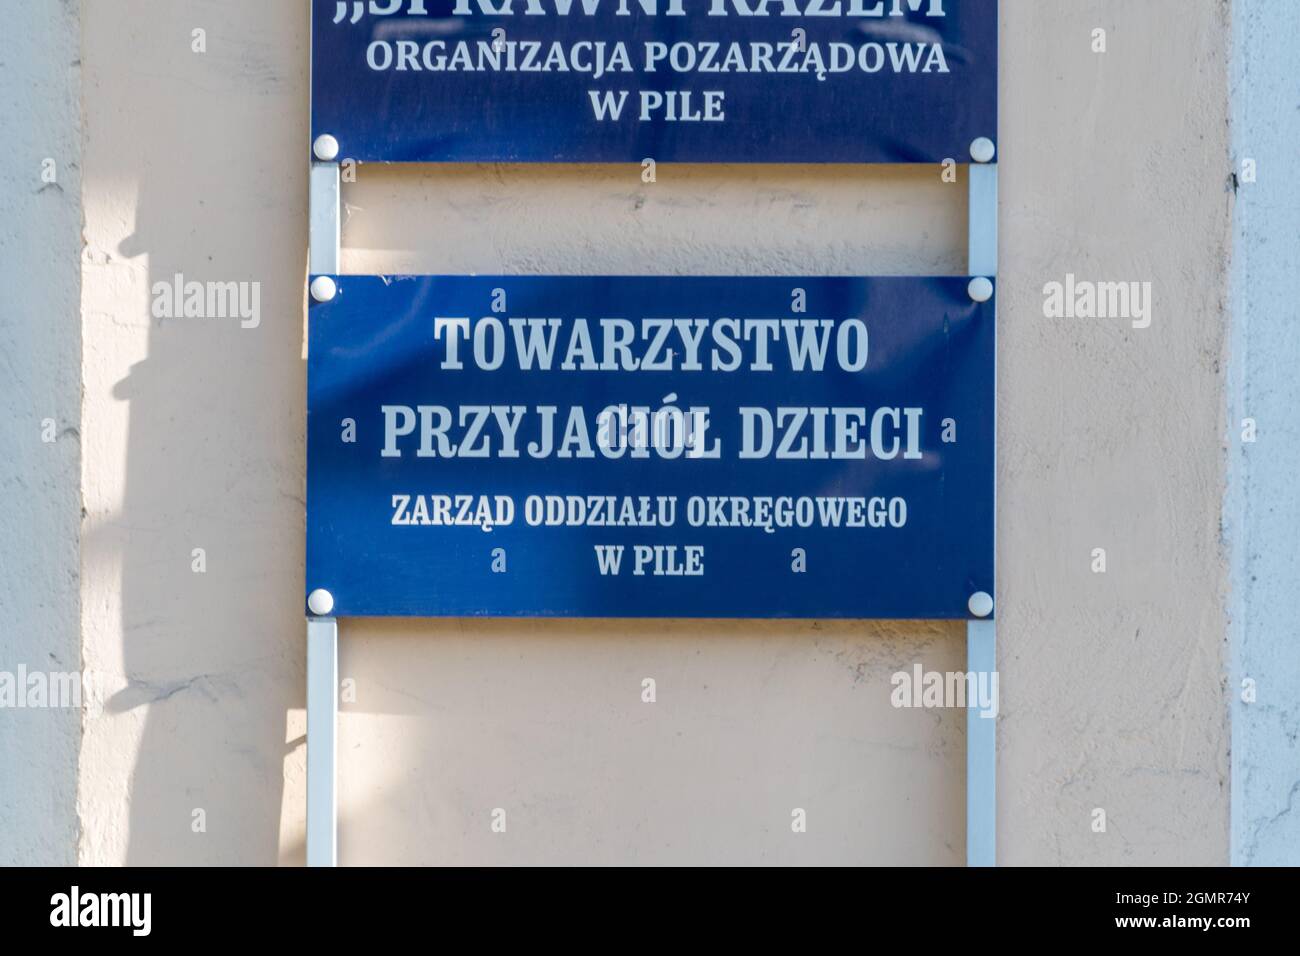 Pila, Poland - May 31, 2021: Sign Society of Friends of Children (Polish: Towarzystwo Przyjaciol Dzieci). Stock Photo